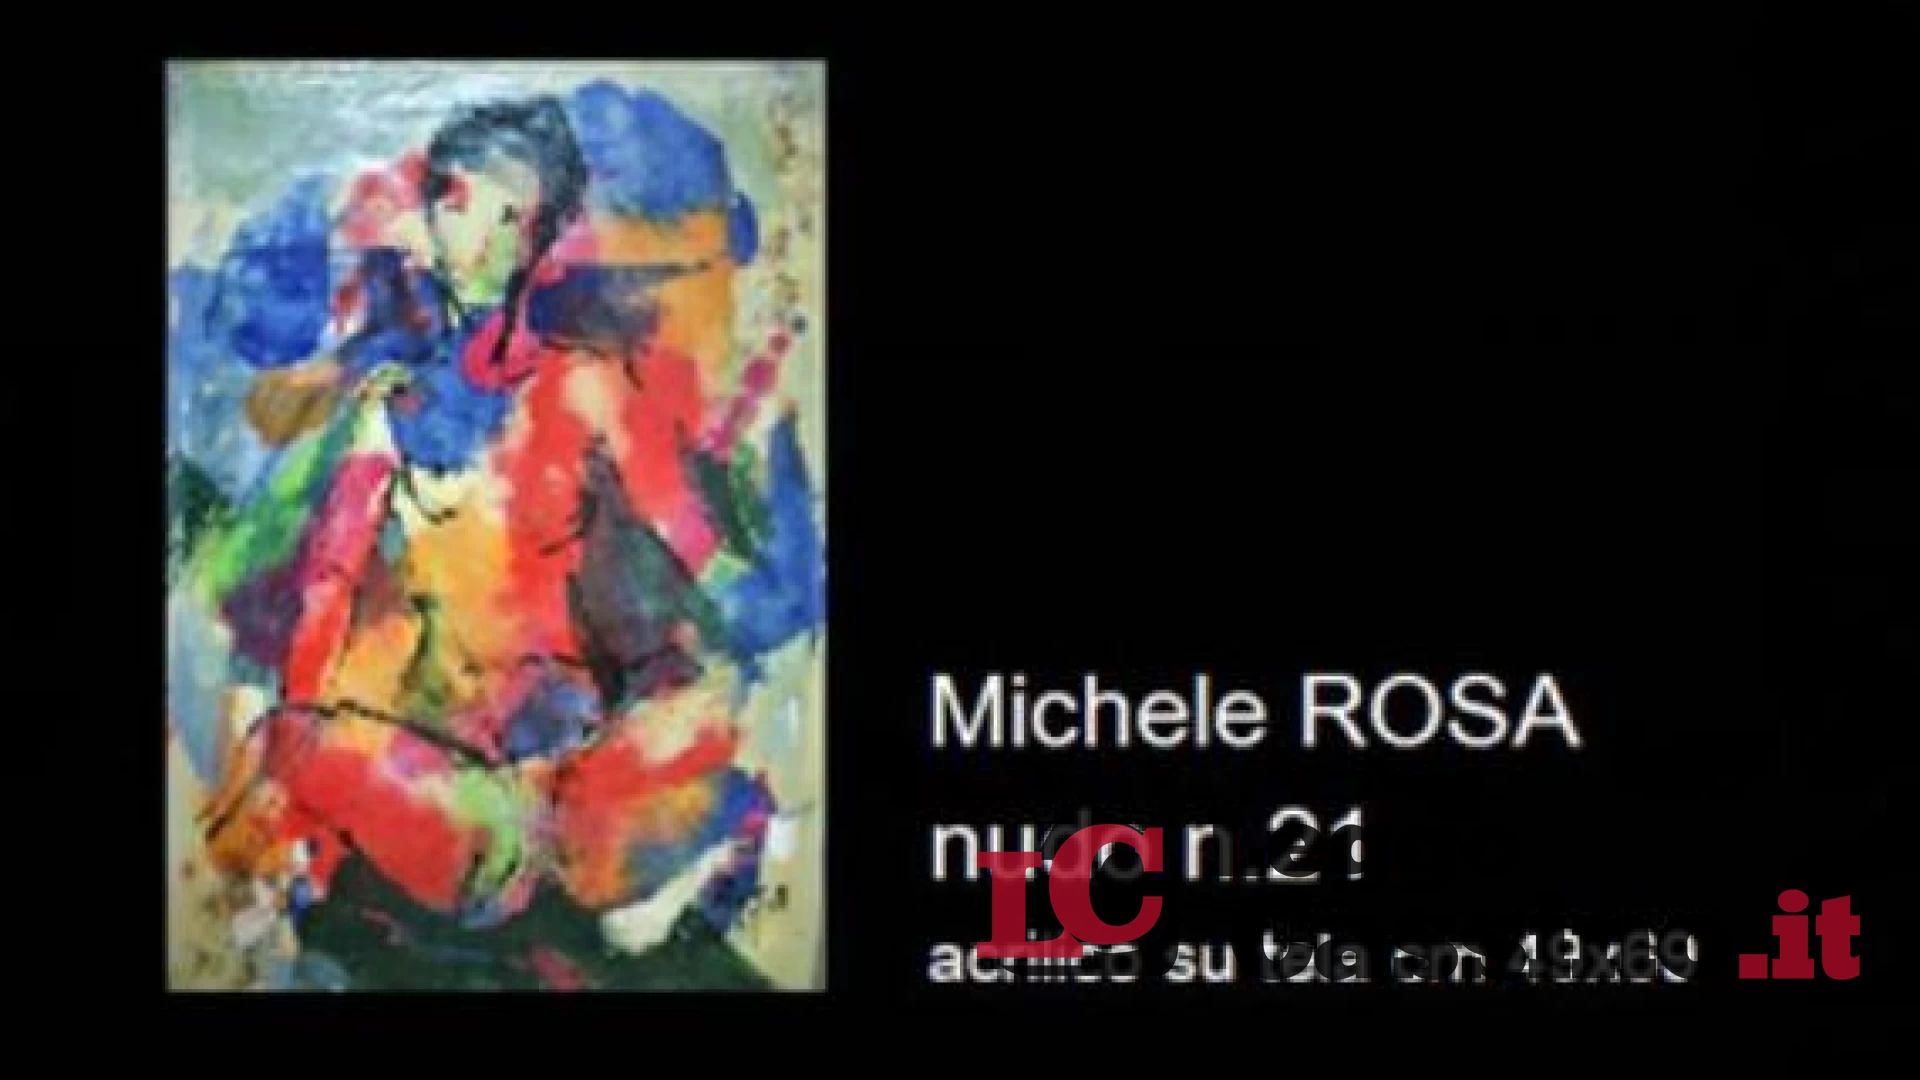 Michele Rosa "in vetrina" nella prestigiosa galleria di Milano